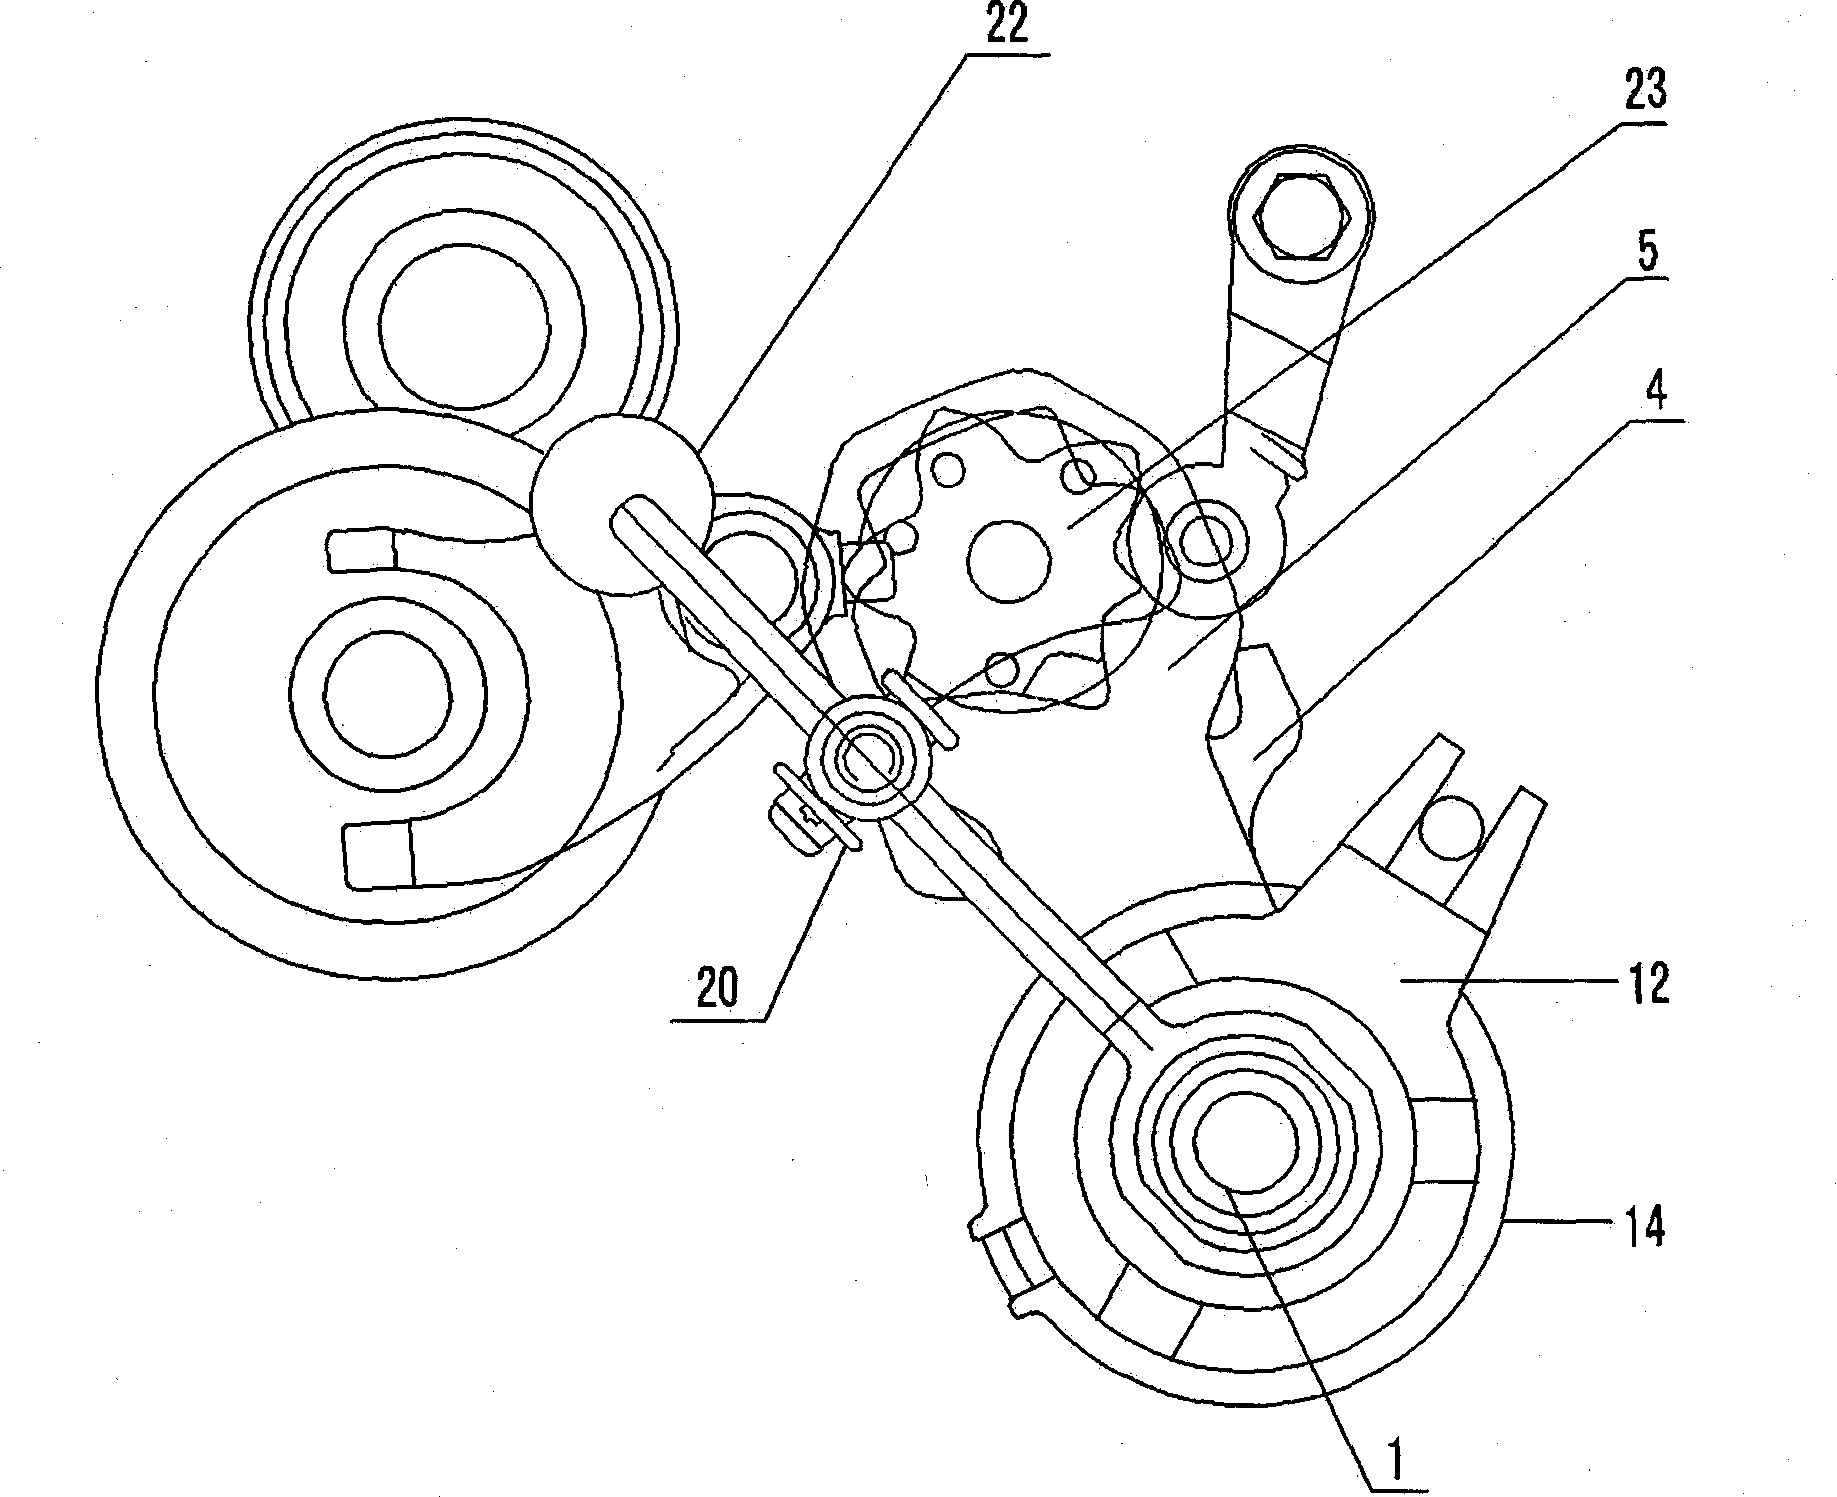 Motorcycle gear shift mechanism